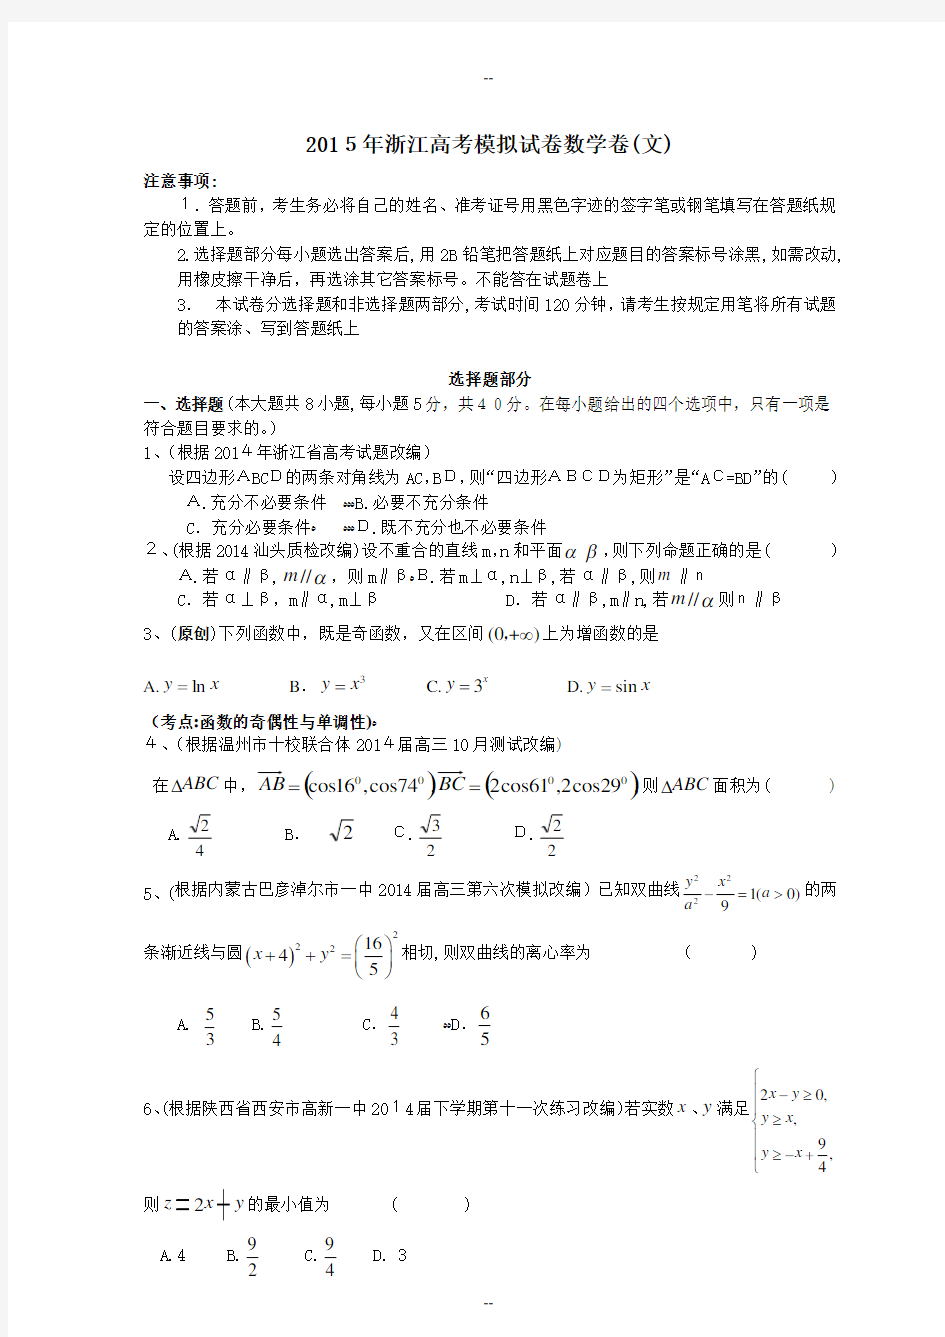 年浙江高考模拟试卷数学卷(文)(含答案答卷)